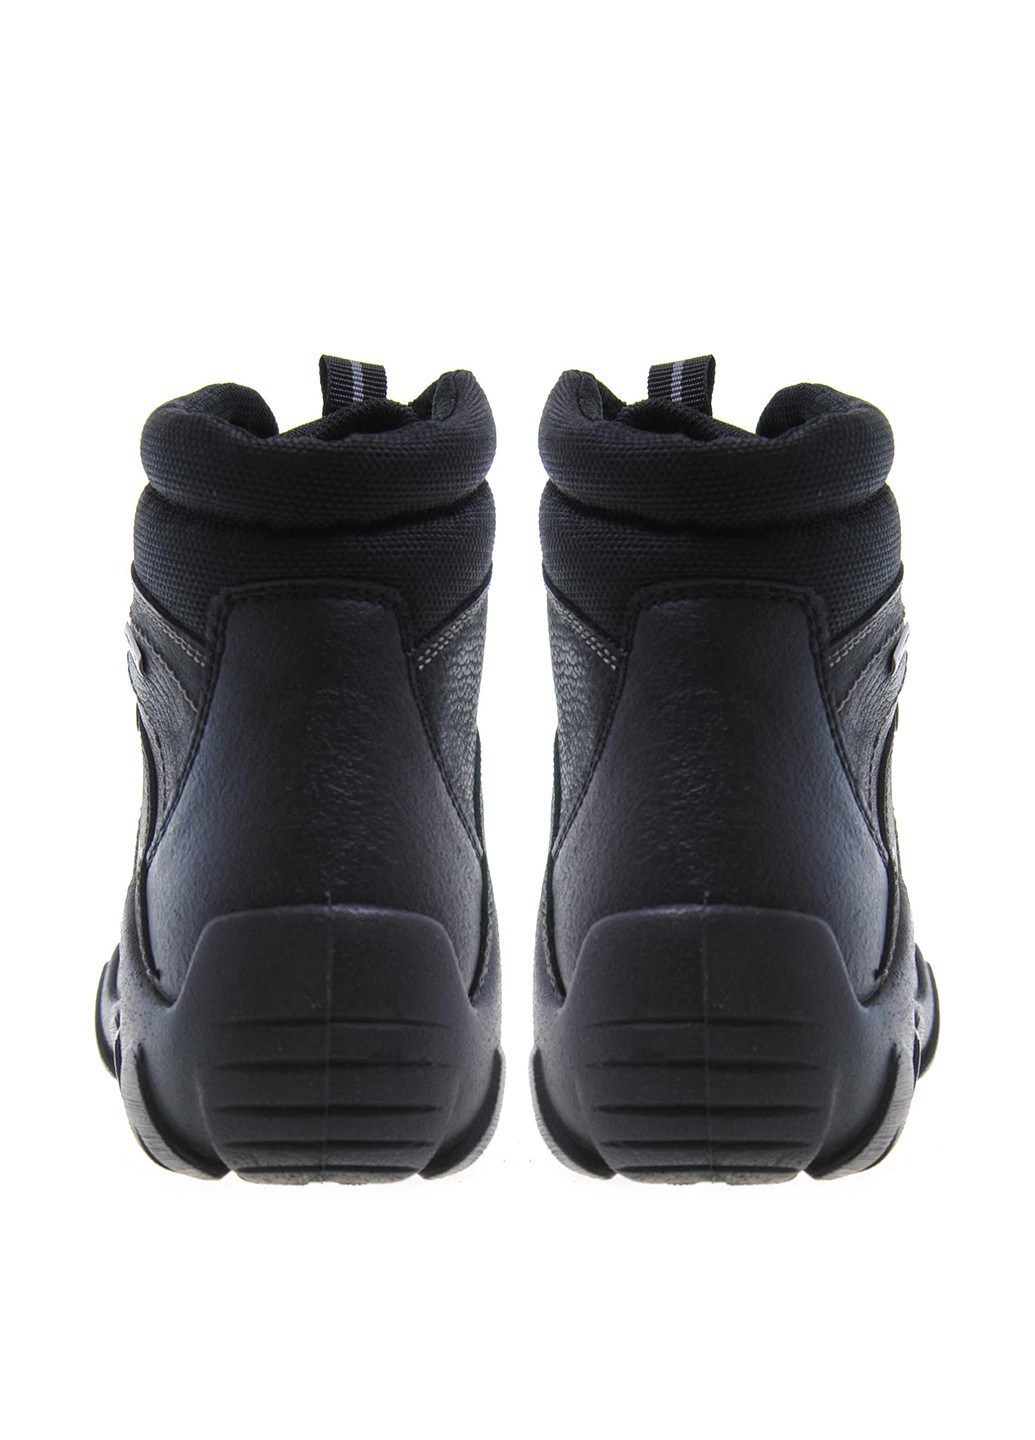 Черные осенние ботинки Imac